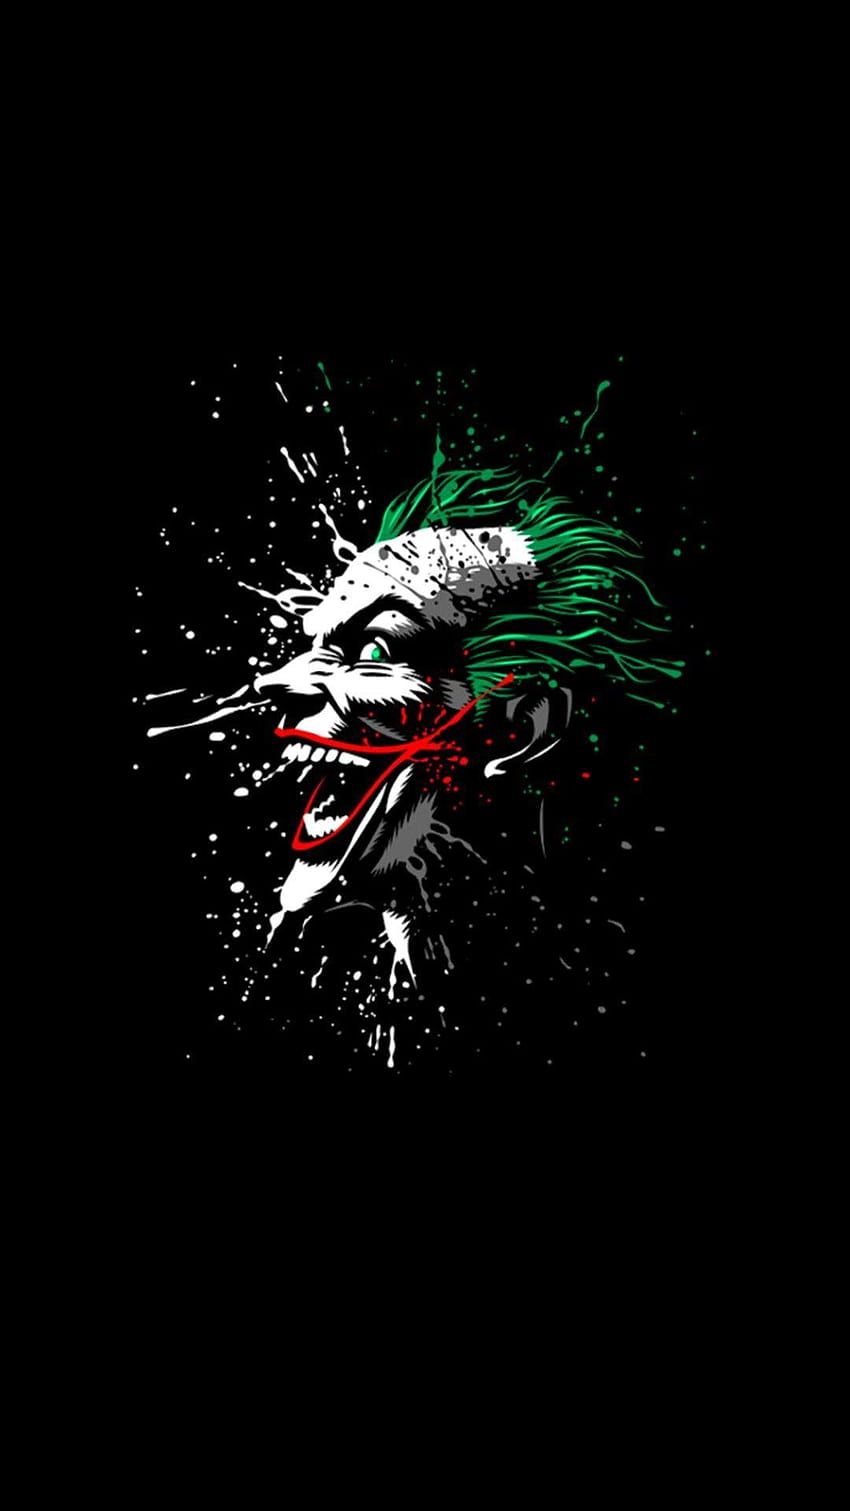 Joker laugh 4K wallpaper download